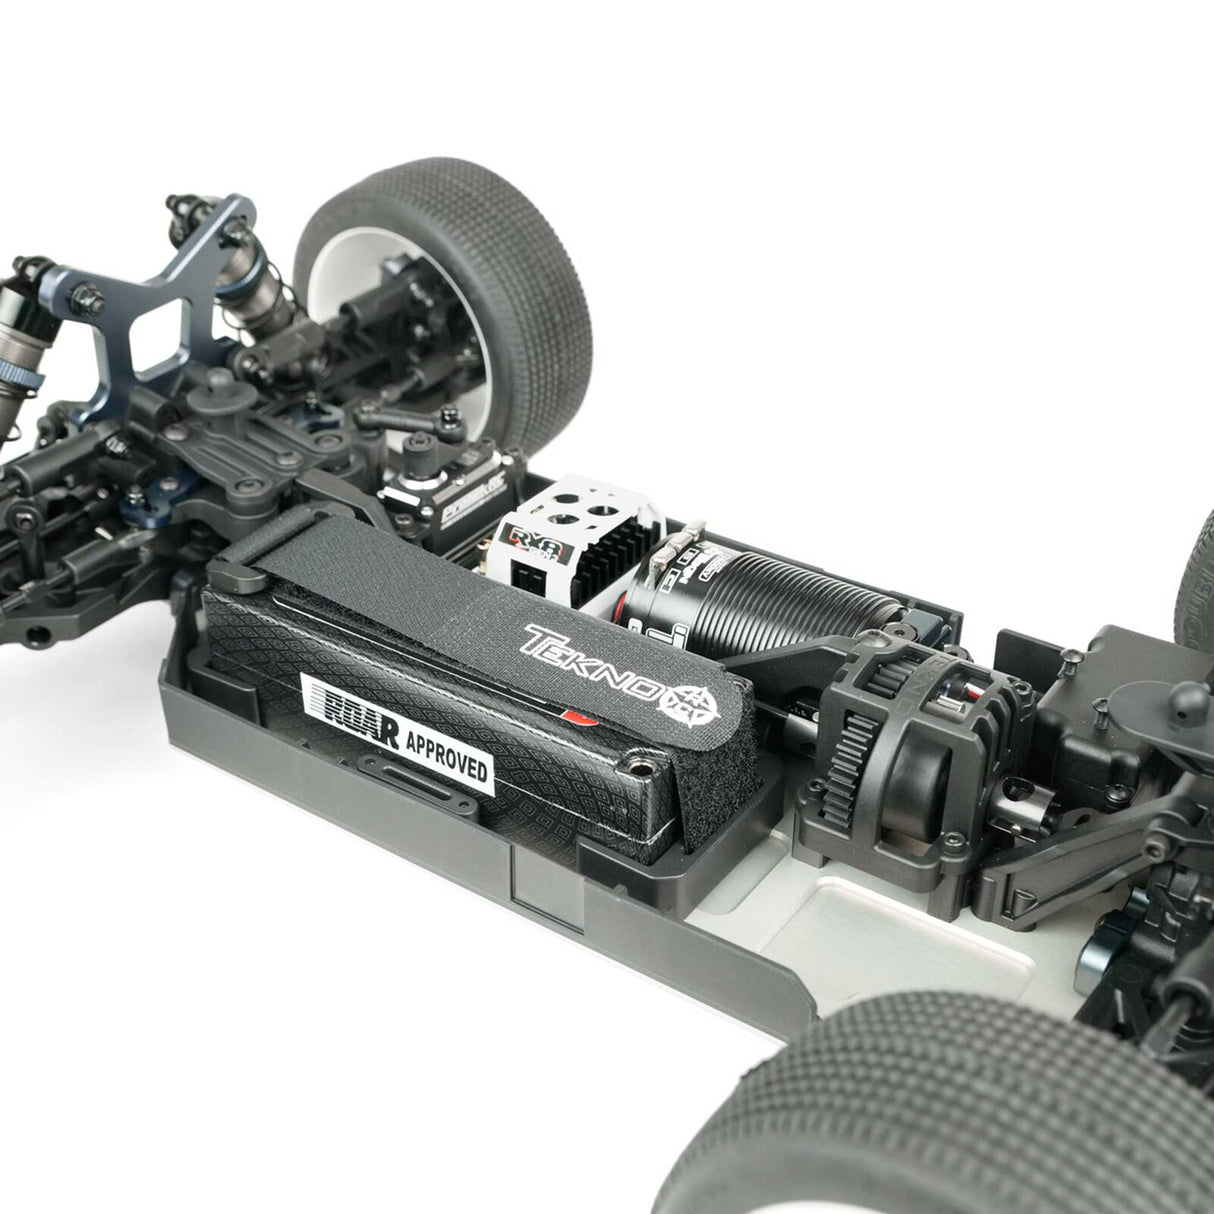 Kit de buggy eléctrico de competición TEKNO TKR9000 1/8 EB48 2.0 4WD